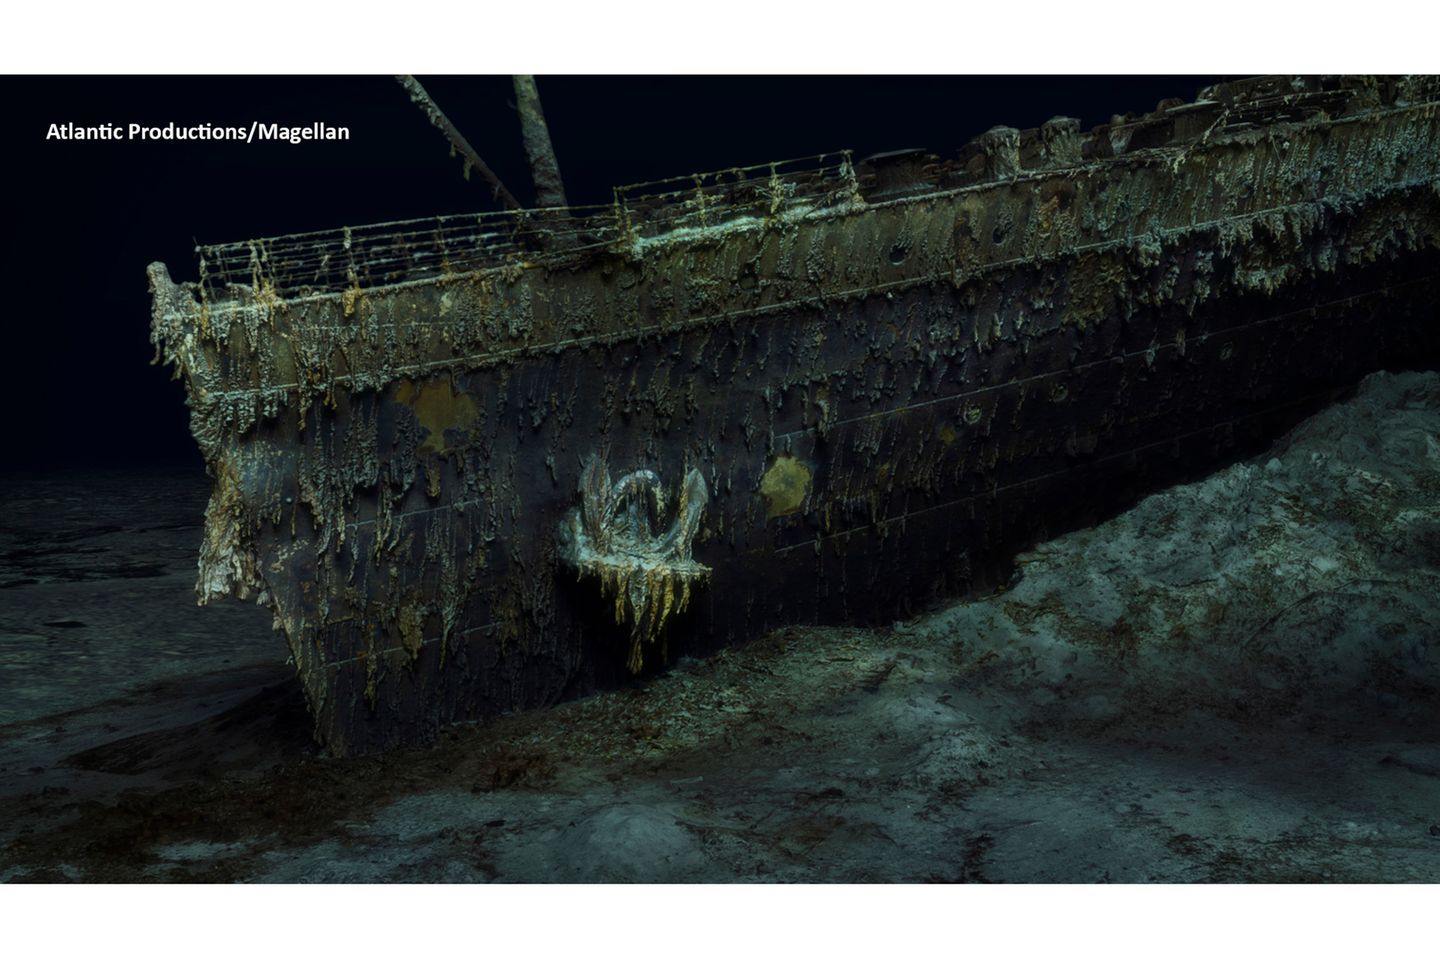 700.000 Bilder: Rund 111 Jahre nach dem Untergang der "Titanic" bieten hochauflösende 3D-Bilder die bisher genaueste Darstellung des Wracks. Wissenschaftler hoffen darauf, dass die Aufnahmen dabei helfen, der genauen Ursache des Schiffsunglücks näherzukommen. Das Modell sei ein großer Schritt, um die Geschichte des Passagierschiffs "in Richtung evidenzbasierter Forschung und nicht Spekulation" voranzutreiben, sagte der "Titanic"-Experte Parks Stephenson der BBC